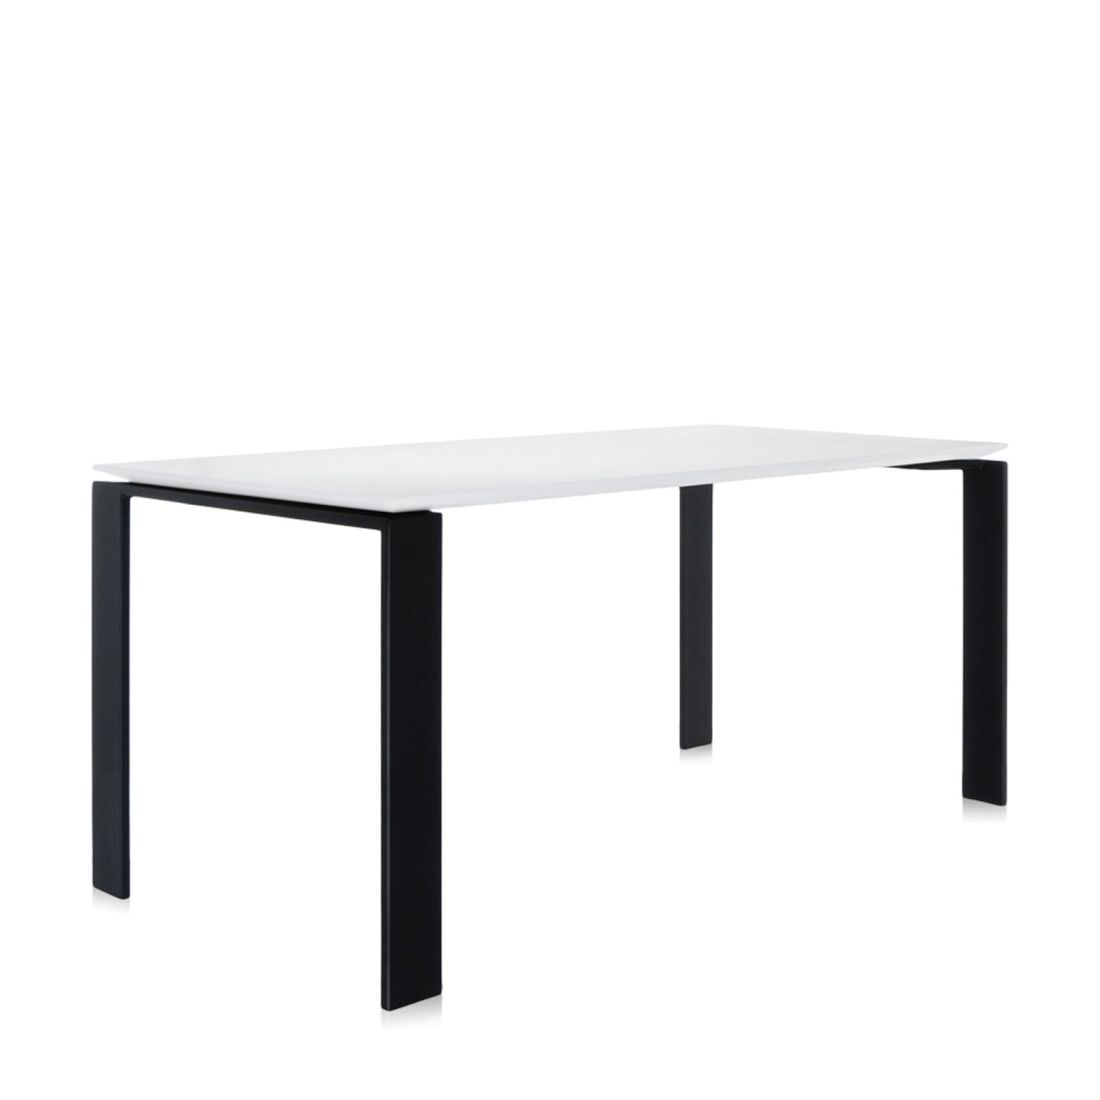 Four Tisch 158 Beine schwarz, Platte weiß